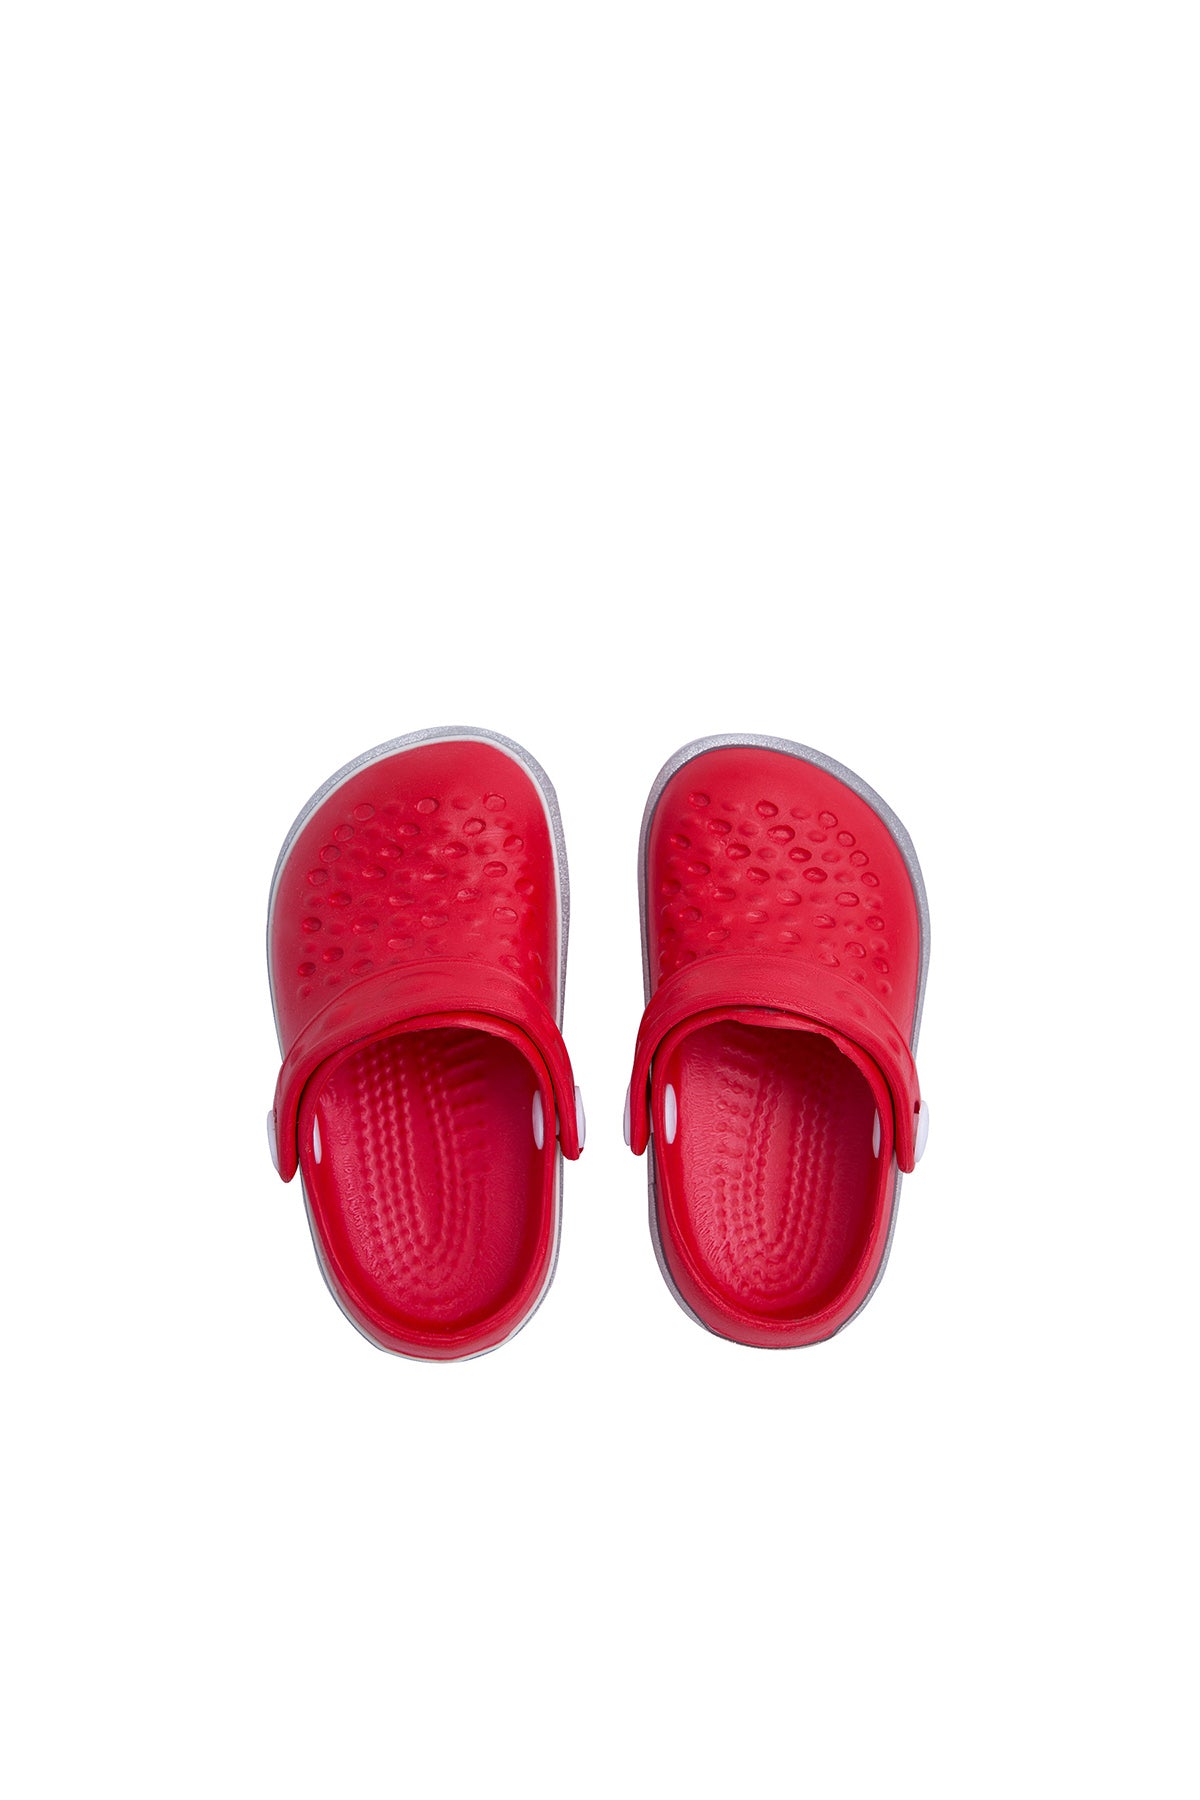 Akınalbella Çocuk Sandalet E060P107 Kırmızı-Yaldız-Gümüş